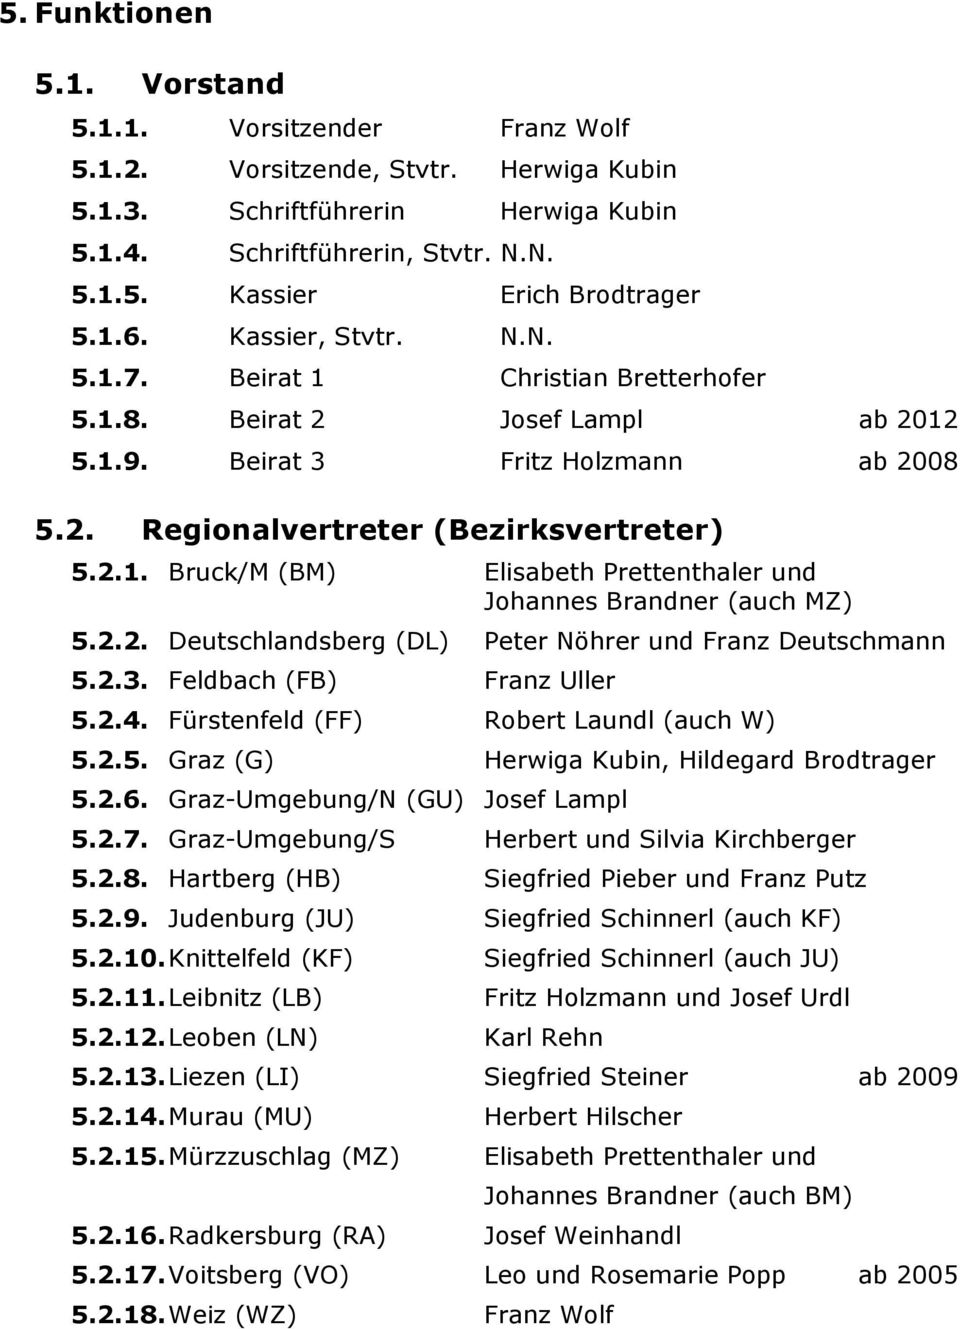 2.2. Deutschlandsberg (DL) Peter Nöhrer und Franz Deutschmann 5.2.3. Feldbach (FB) Franz Uller 5.2.4. Fürstenfeld (FF) Robert Laundl (auch W) 5.2.5. Graz (G) Herwiga Kubin, Hildegard Brodtrager 5.2.6.